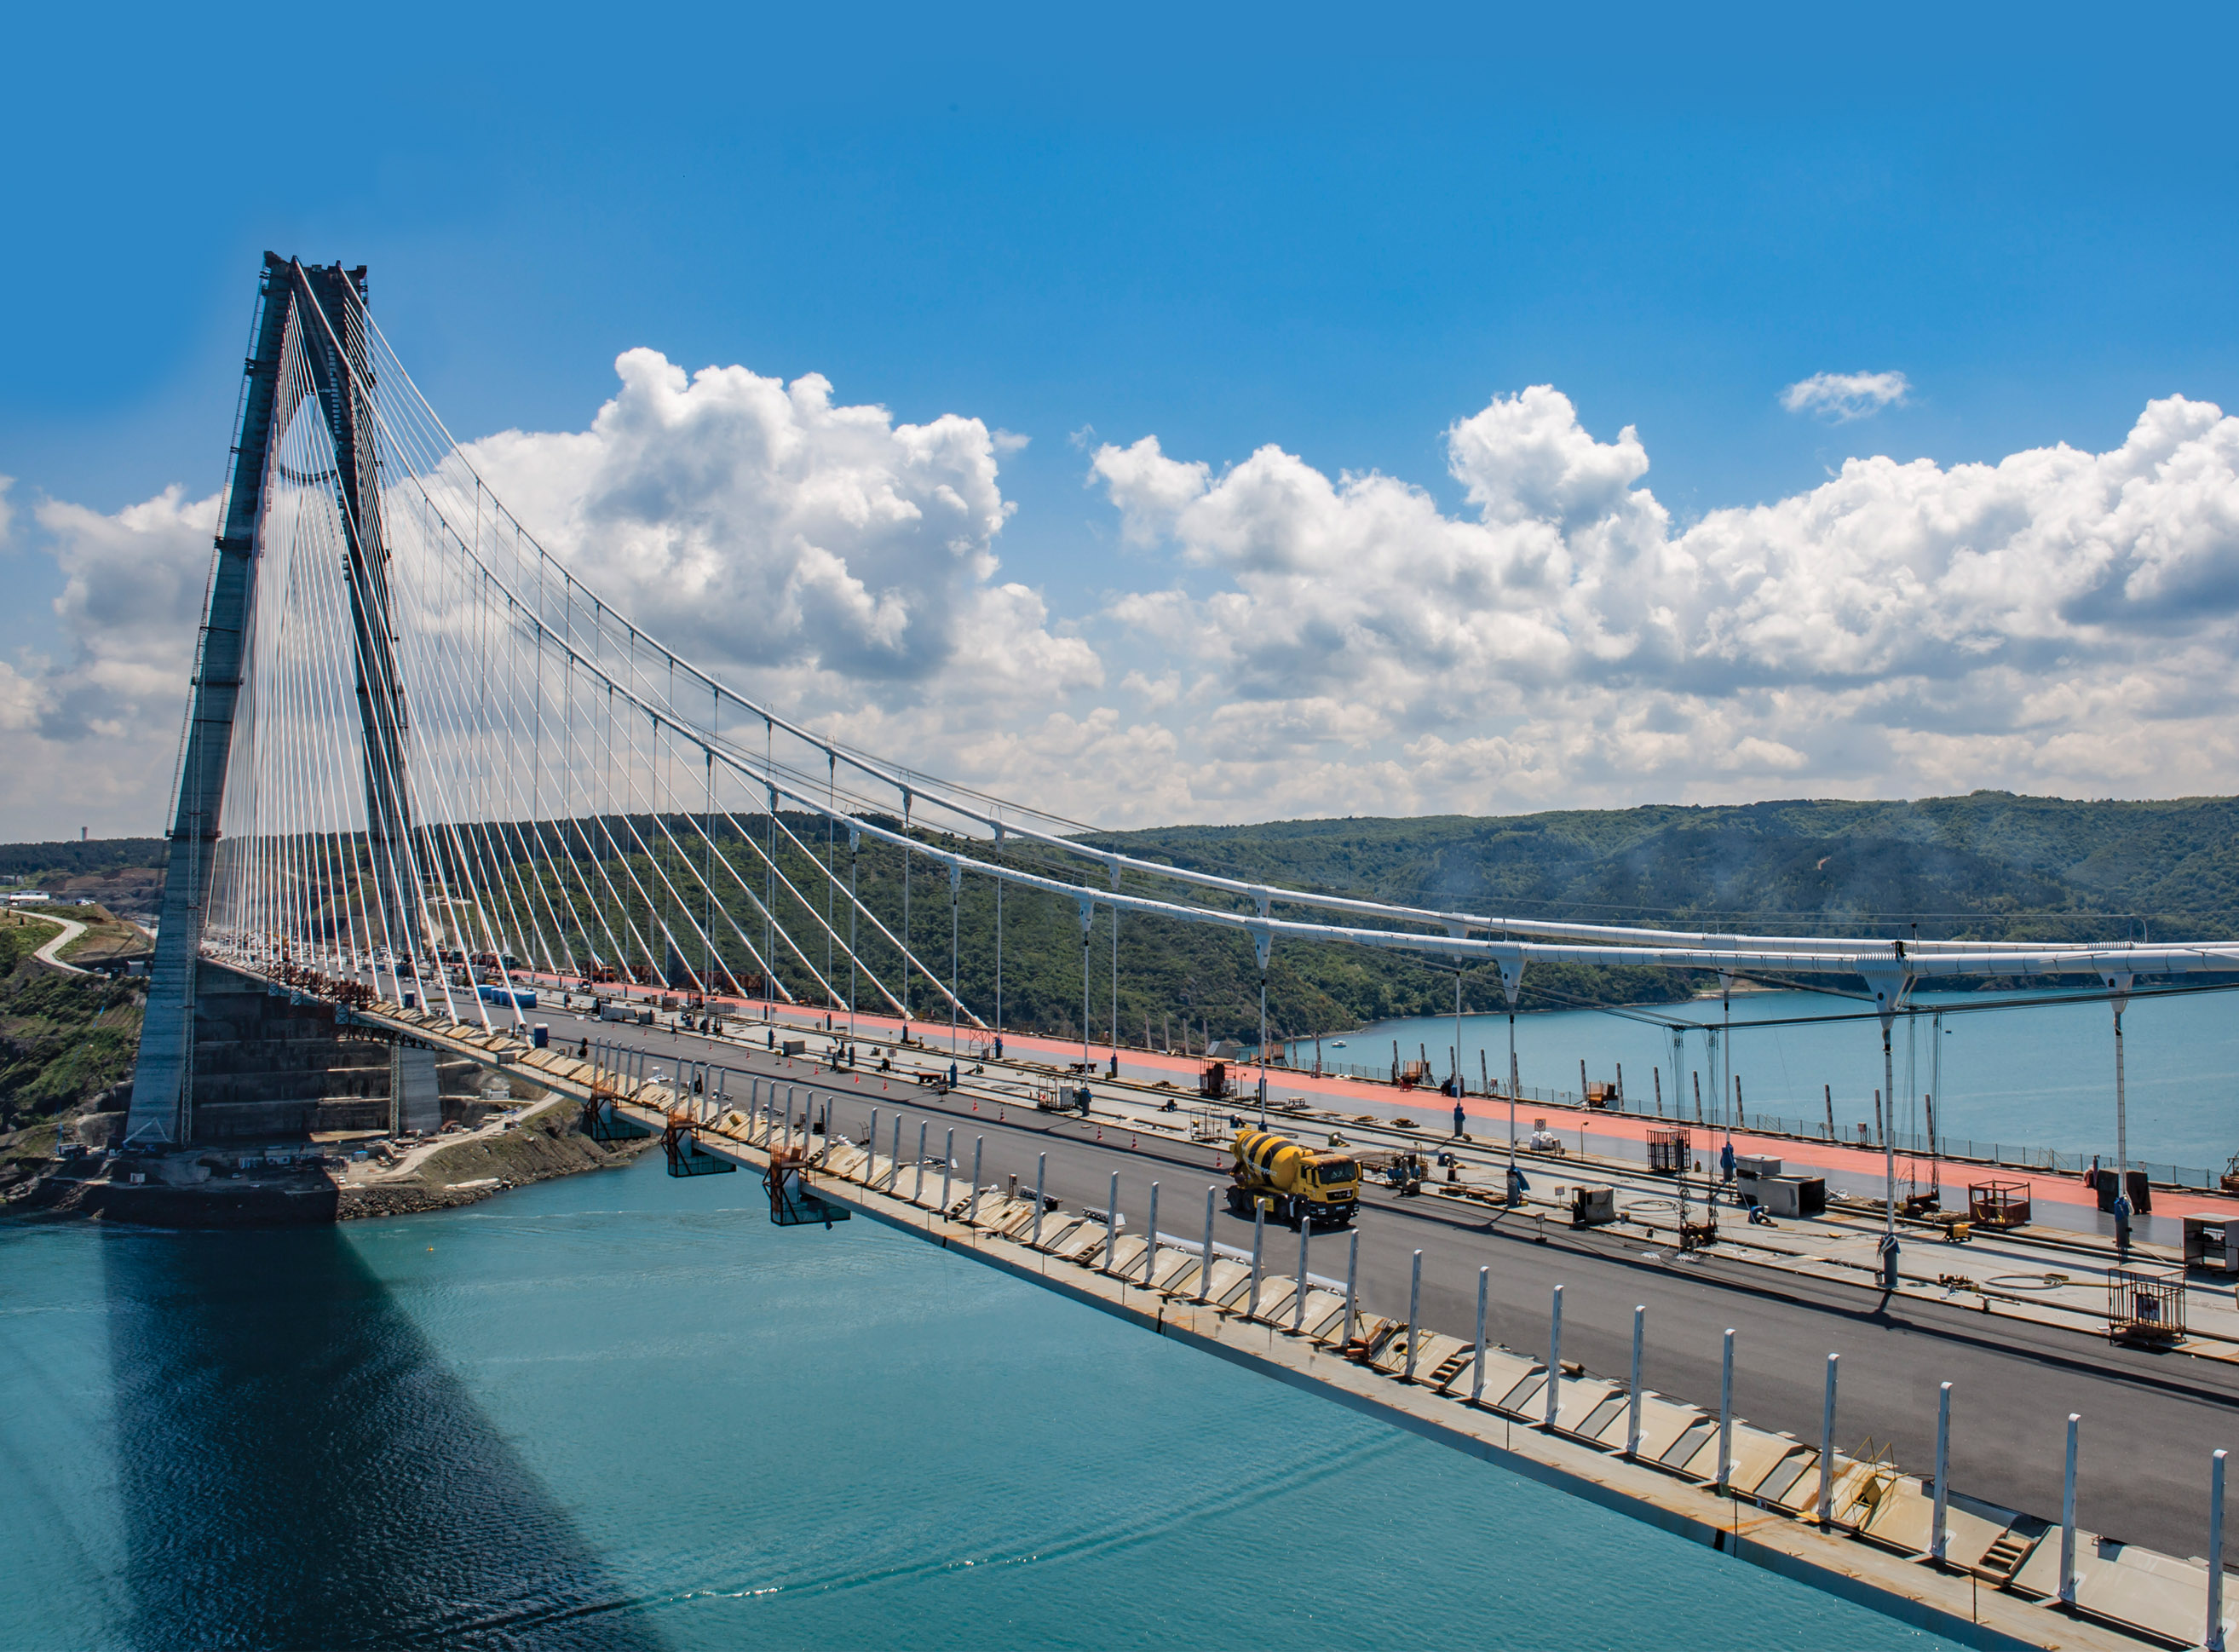 Nice Images Collection: Bosphorus Bridge Desktop Wallpapers